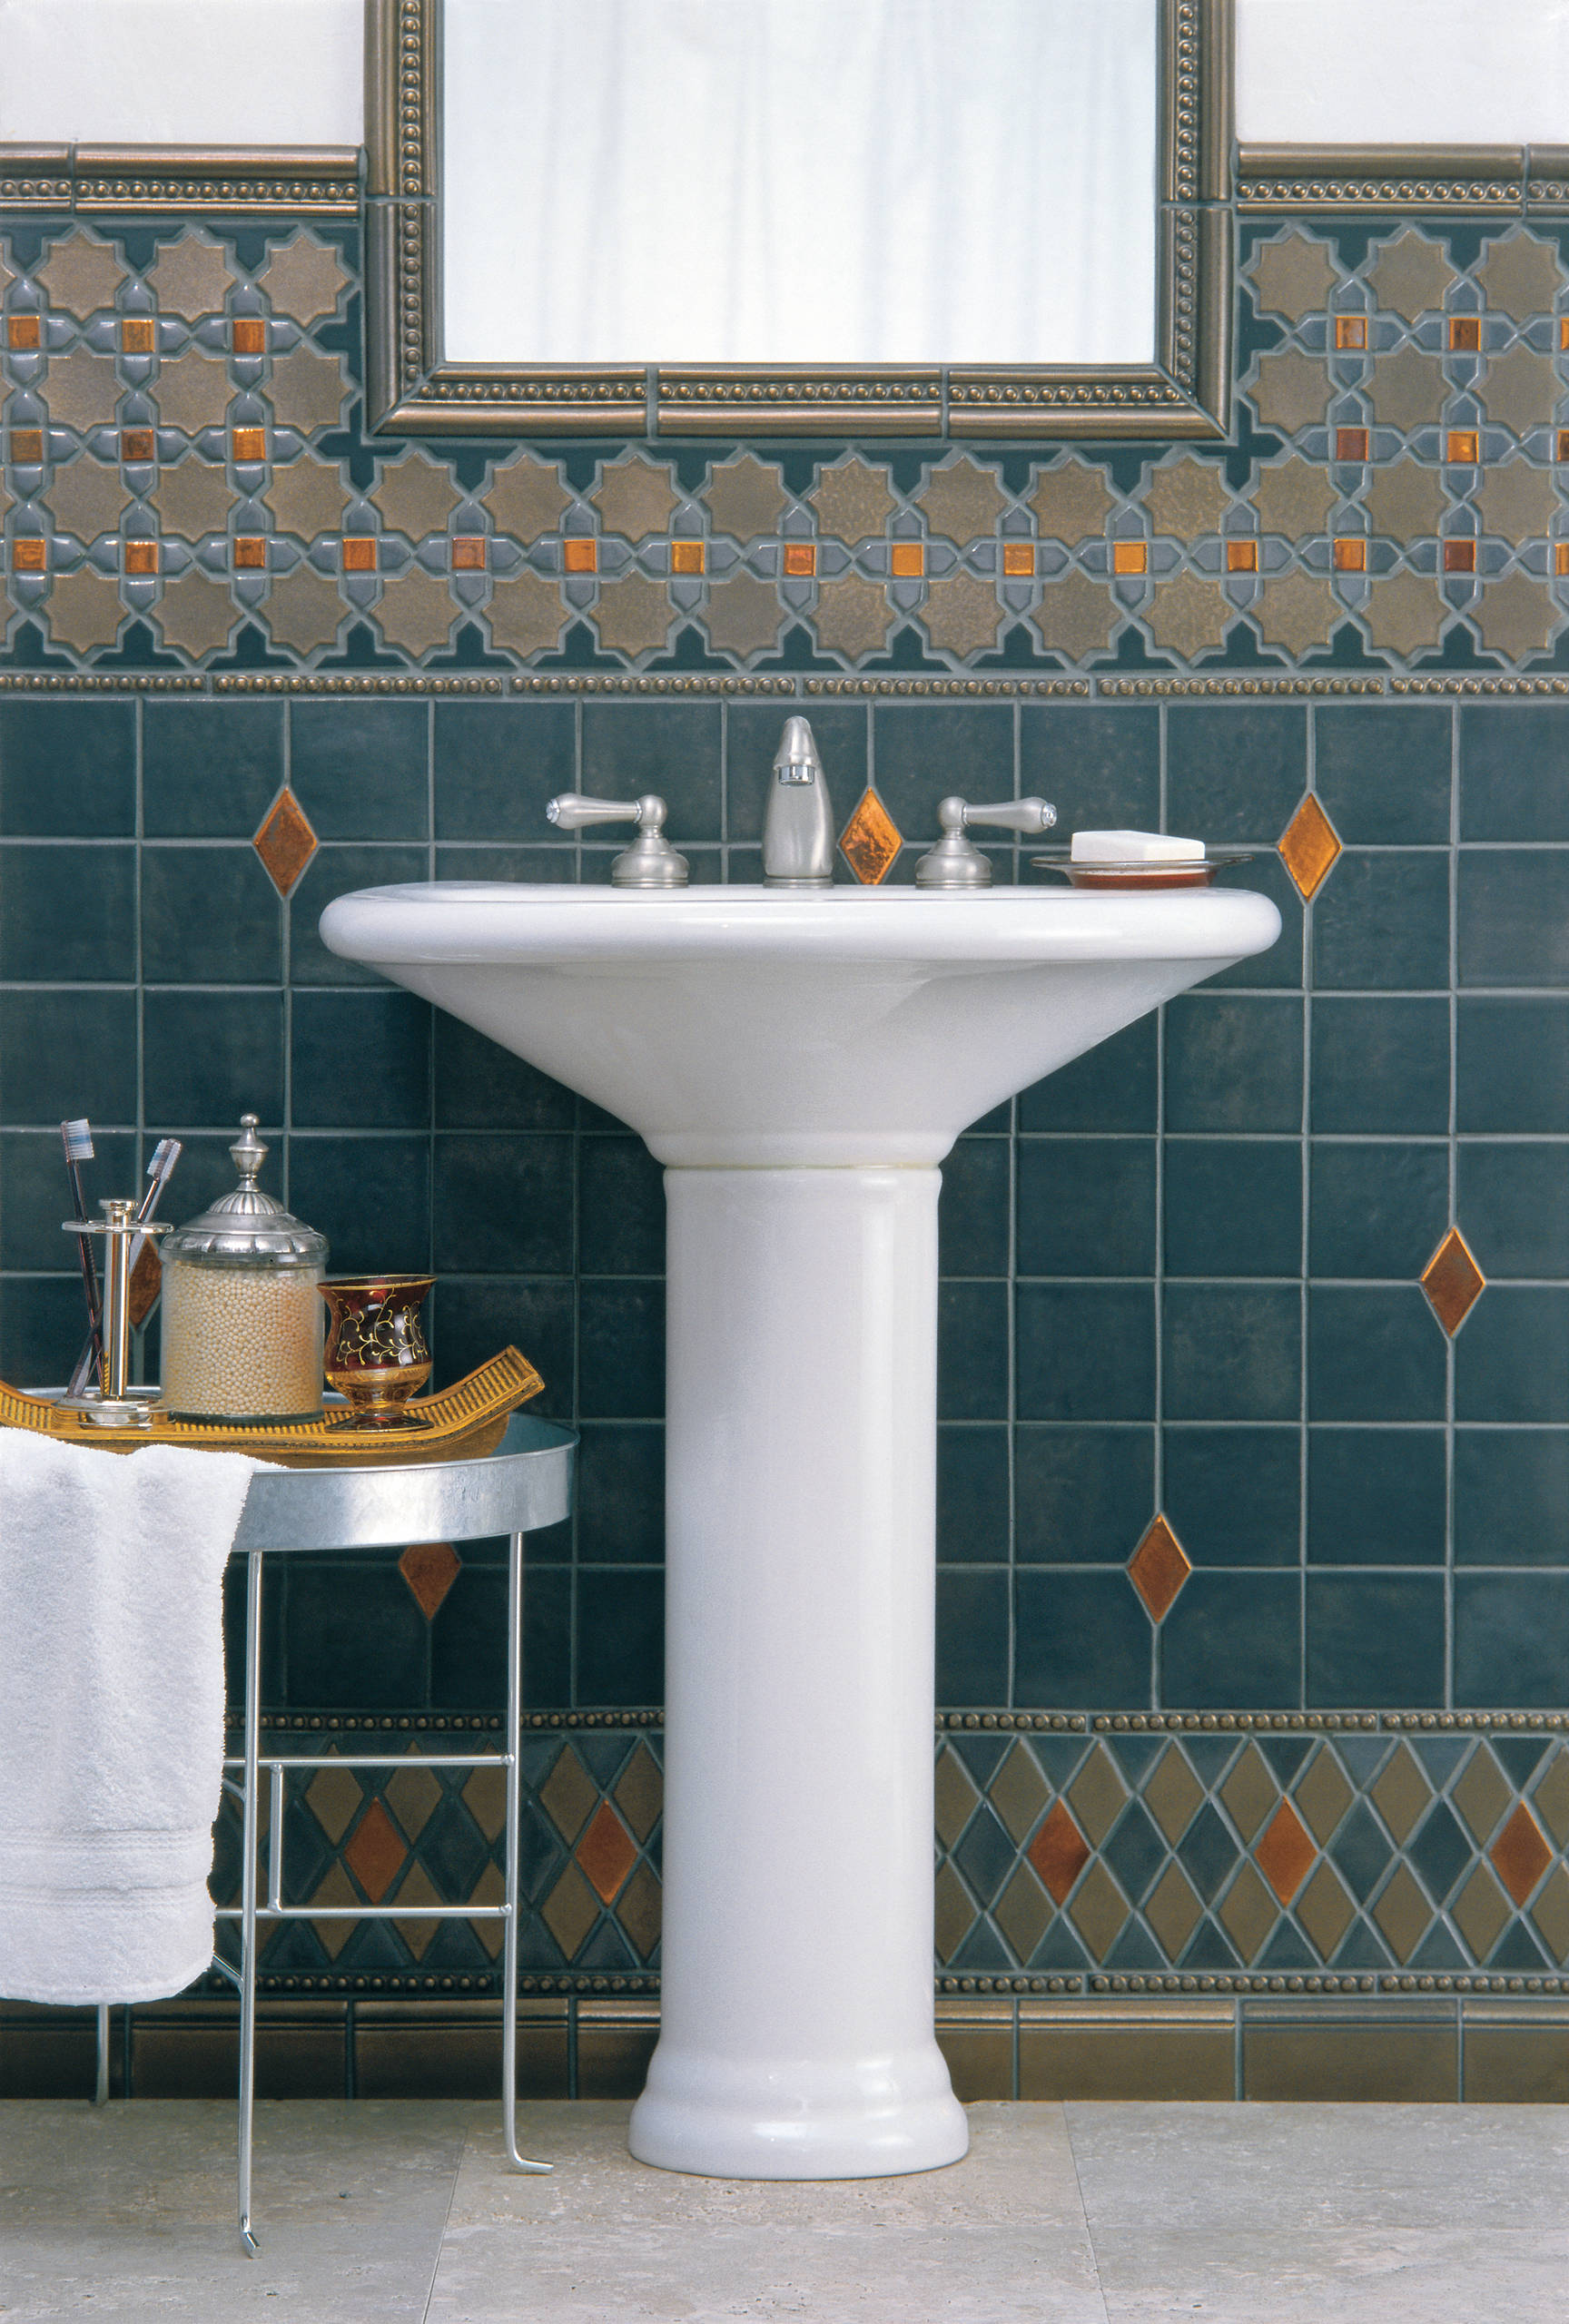 Orientalisches Badezimmer: 10 typische Elemente fürs Hamam-Feeling daheim